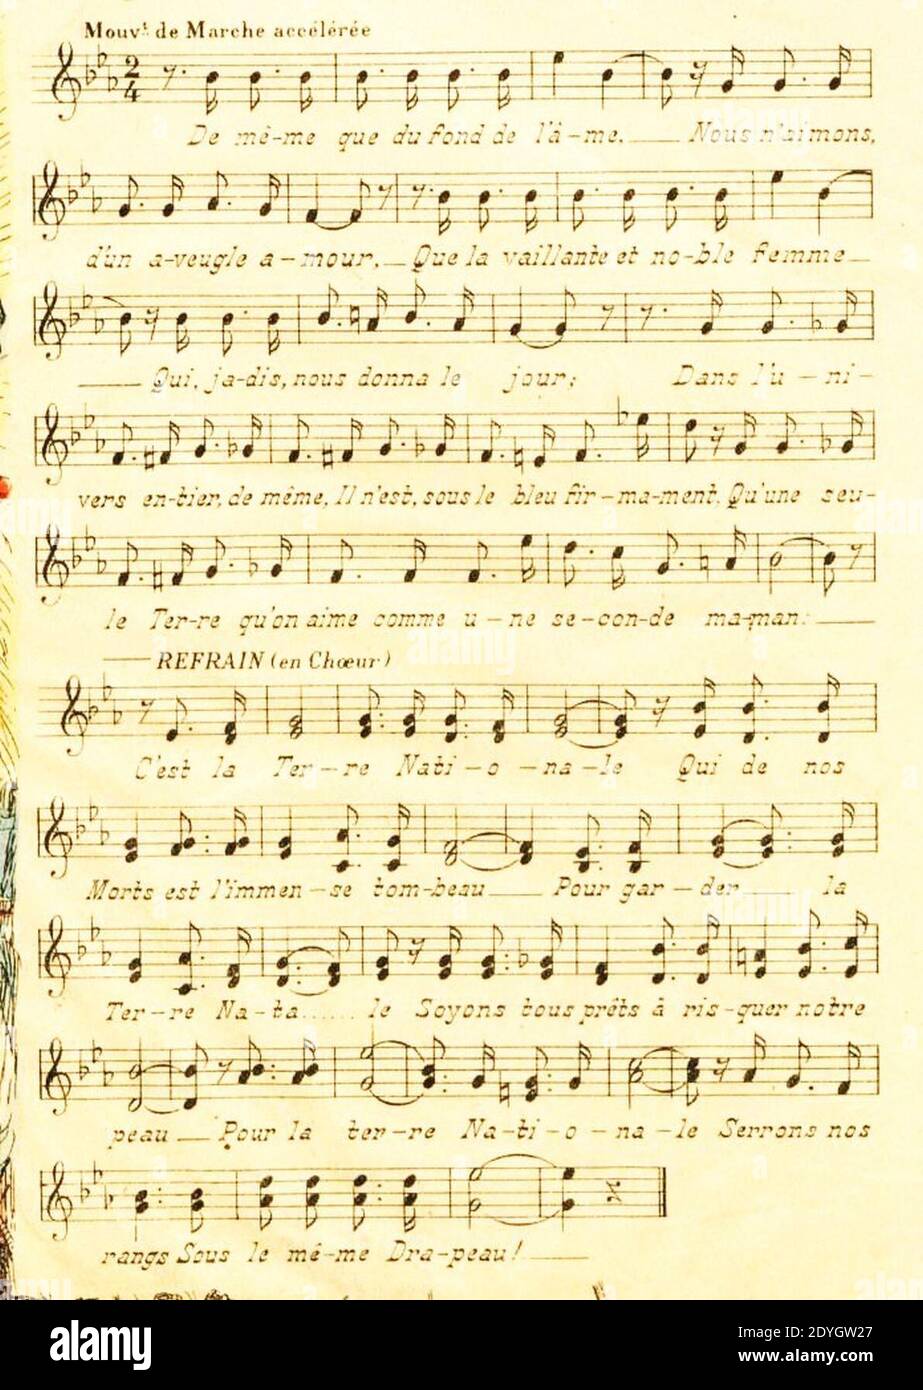 La Terre Nationale - Chanson, paroles et musique de Théodore Botrel - Imagerie d'Epinal 1909. Stock Photo